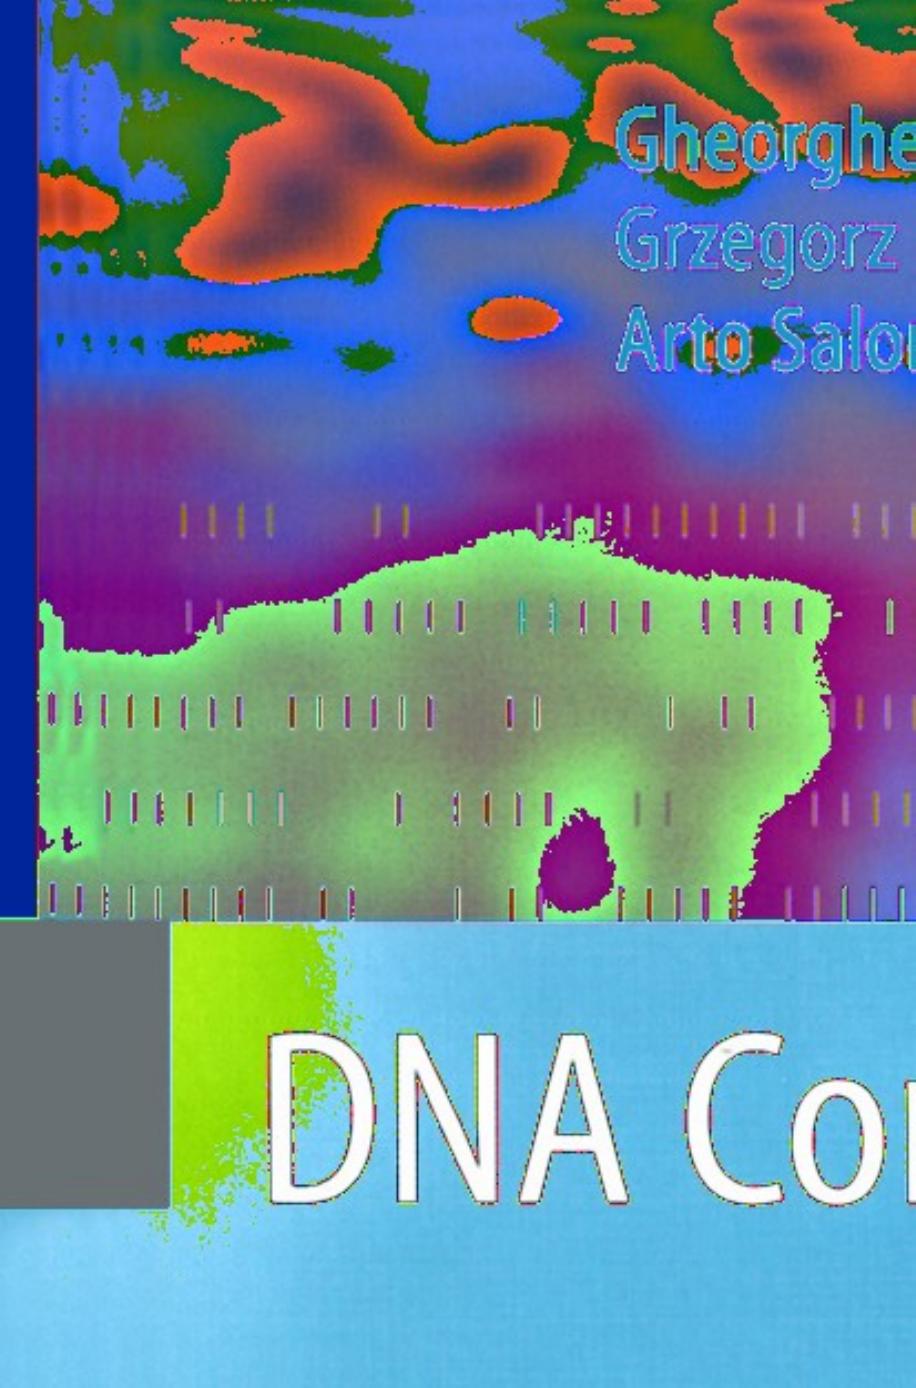 DNA Computing: New Computing Paradigms